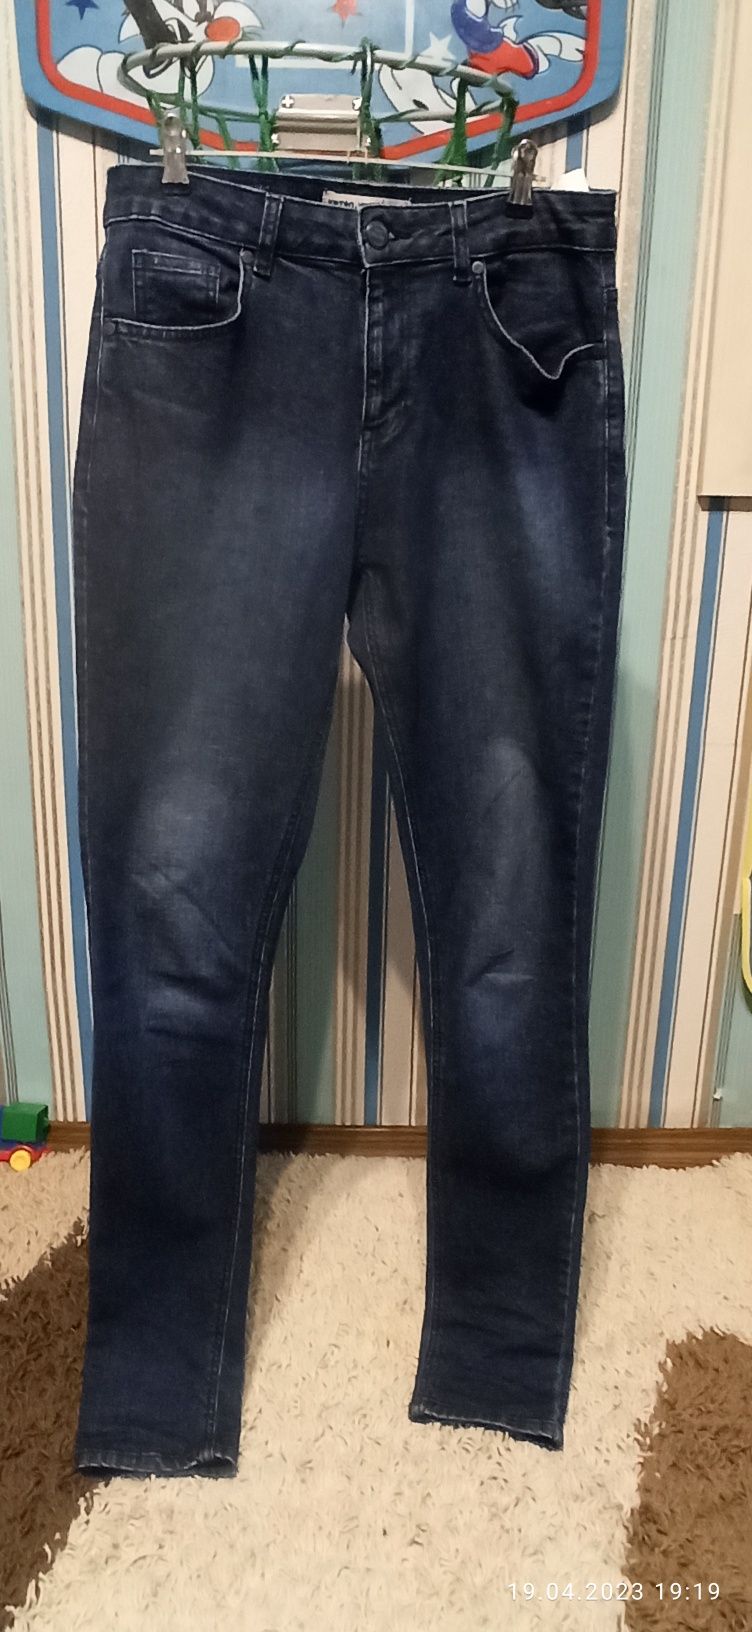 Продам чоловічі джинси р. 30-34 в гарному стані 6 шт